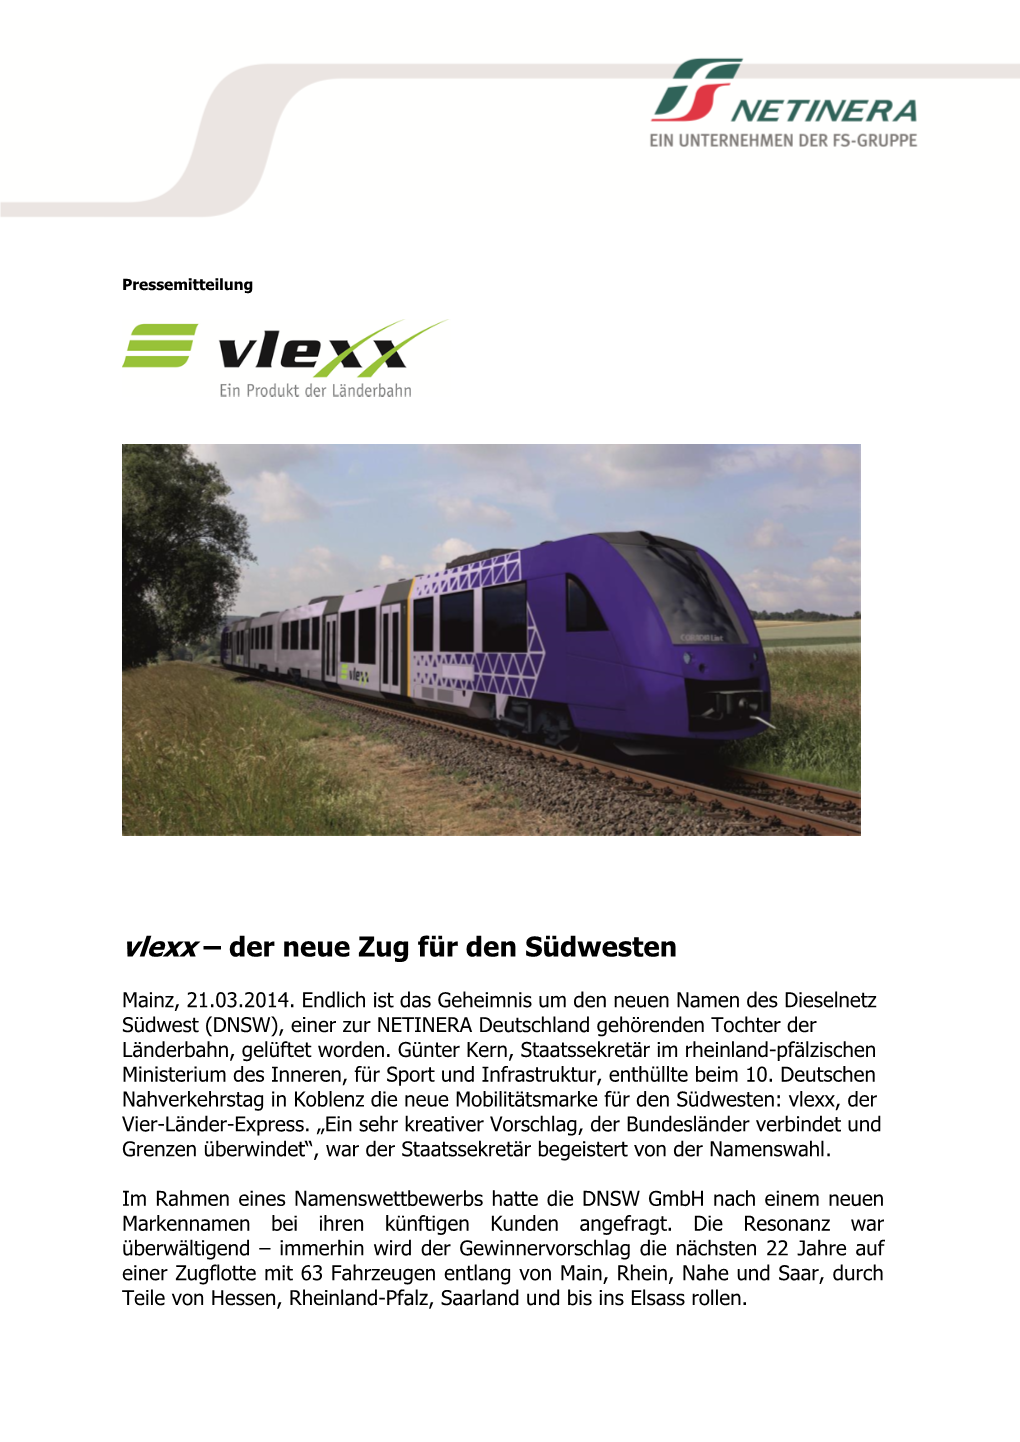 Vlexx – Der Neue Zug Für Den Südwesten